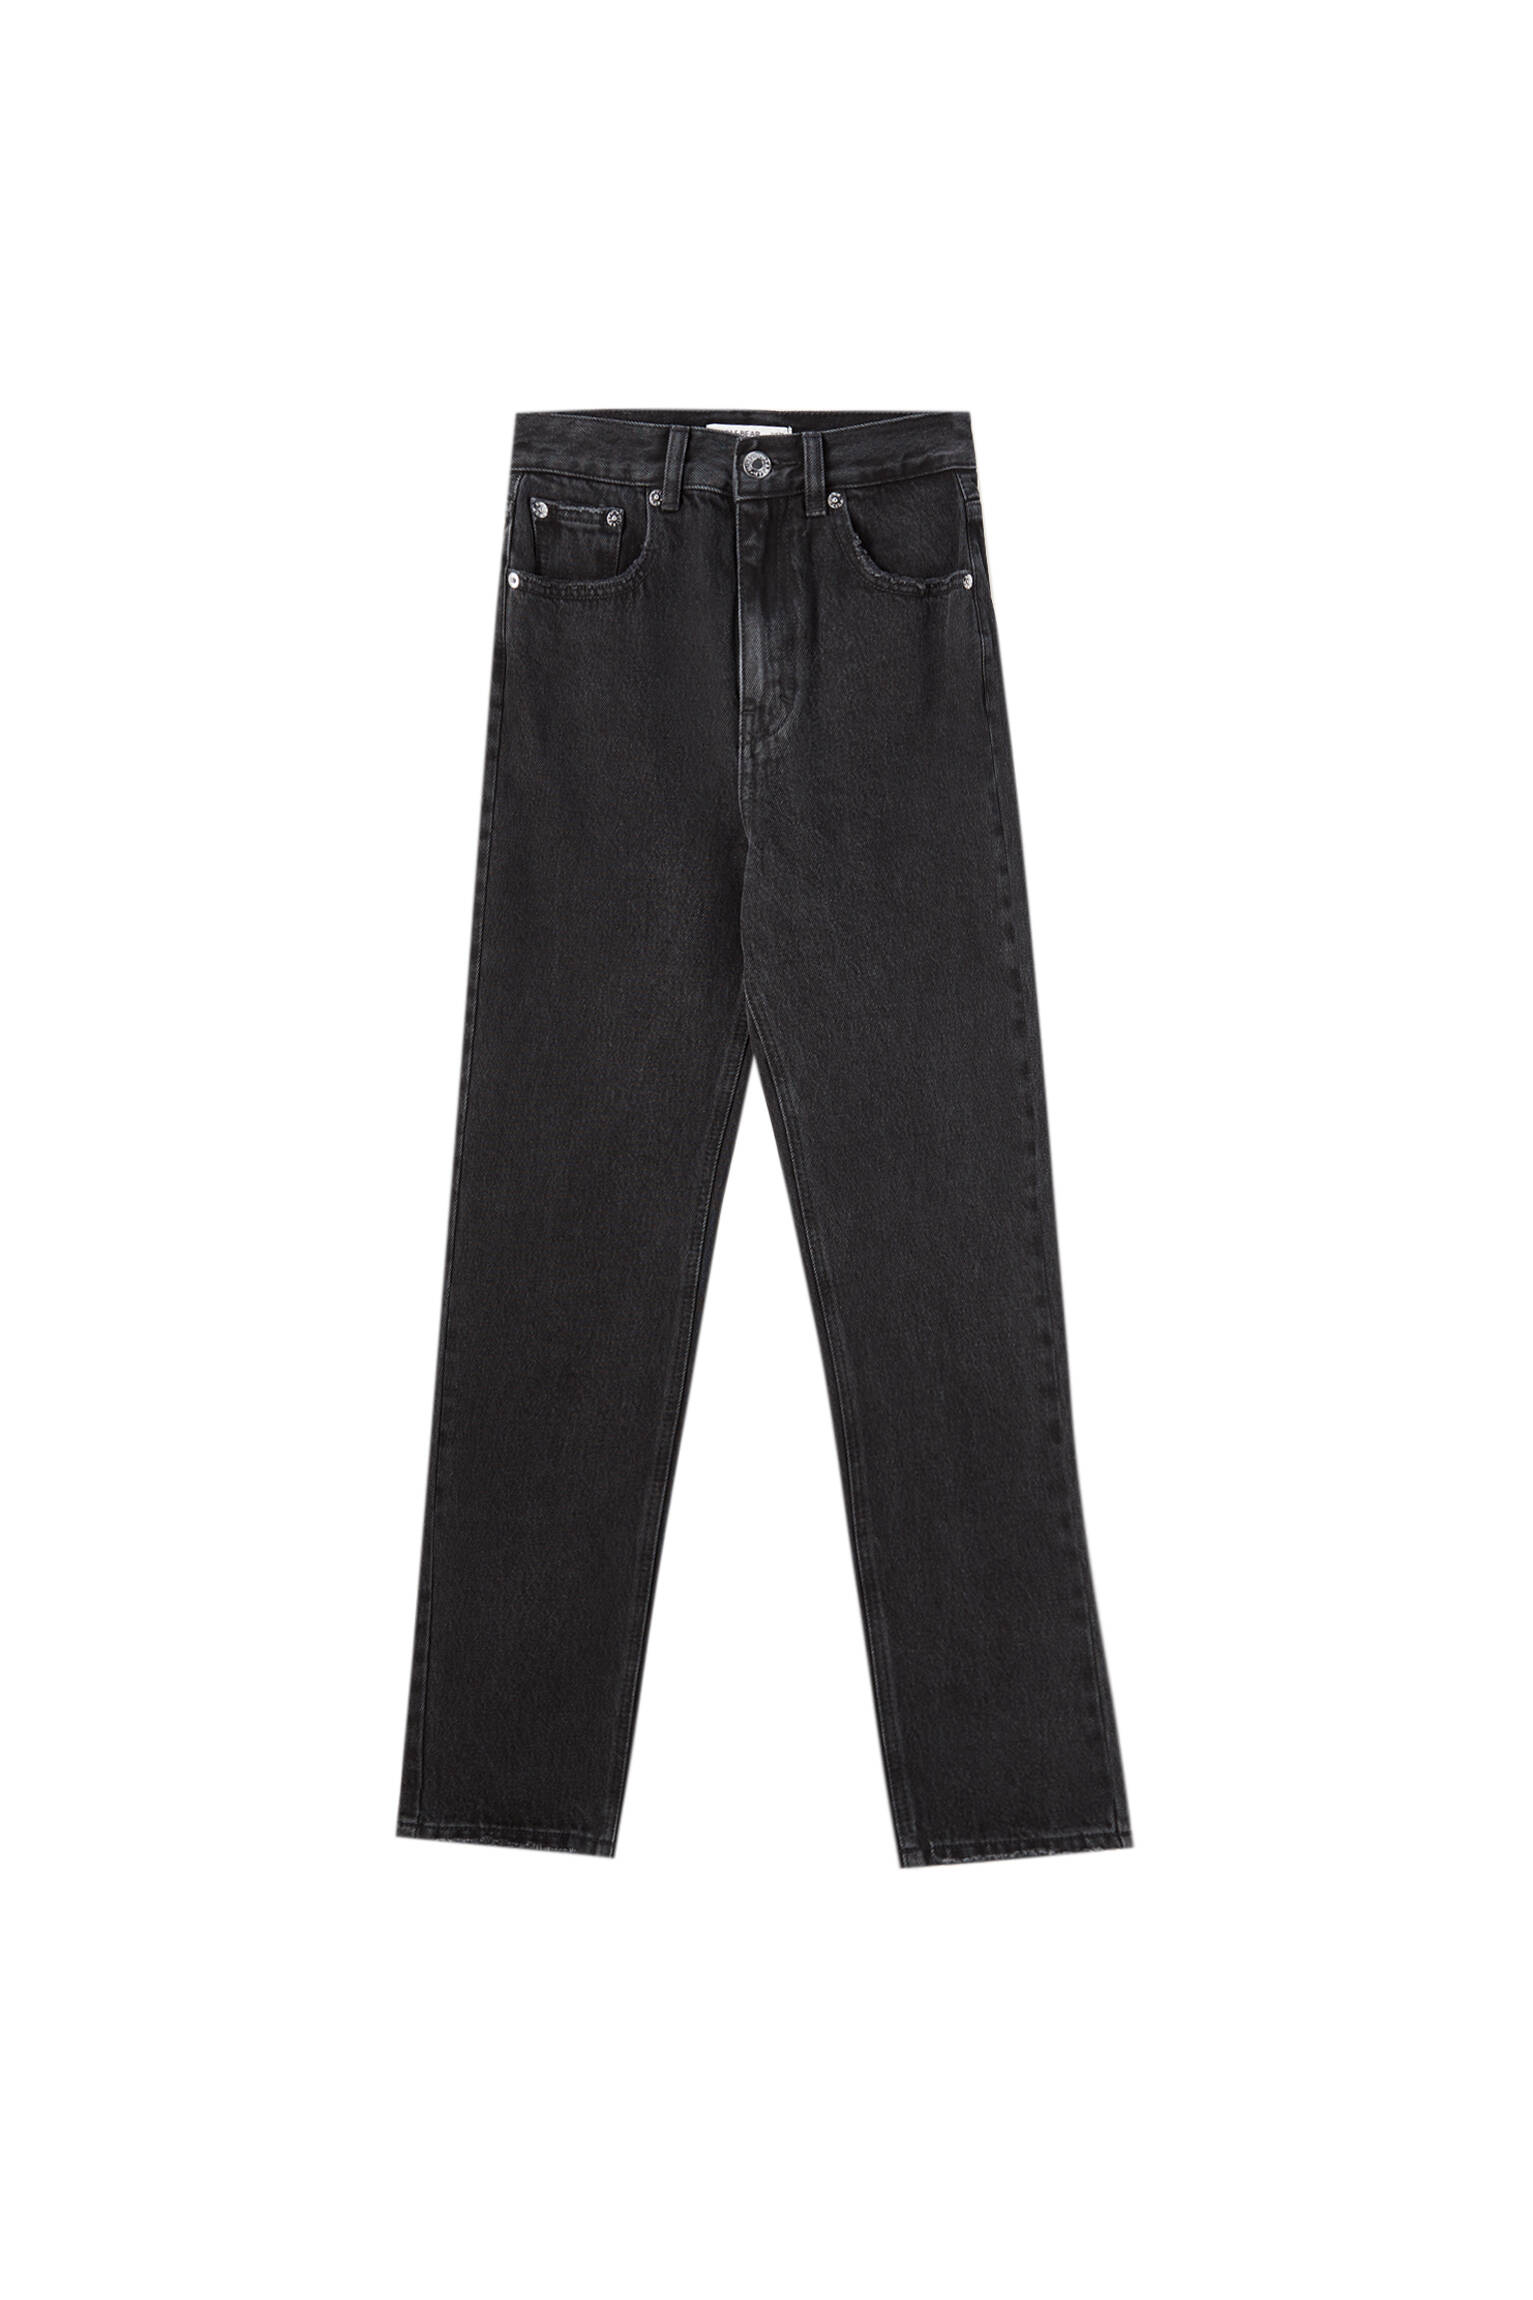 Базовые джинсы mom fit - органический хлопок (не менее 50%) ЧЕРНЫЙ Pull & Bear